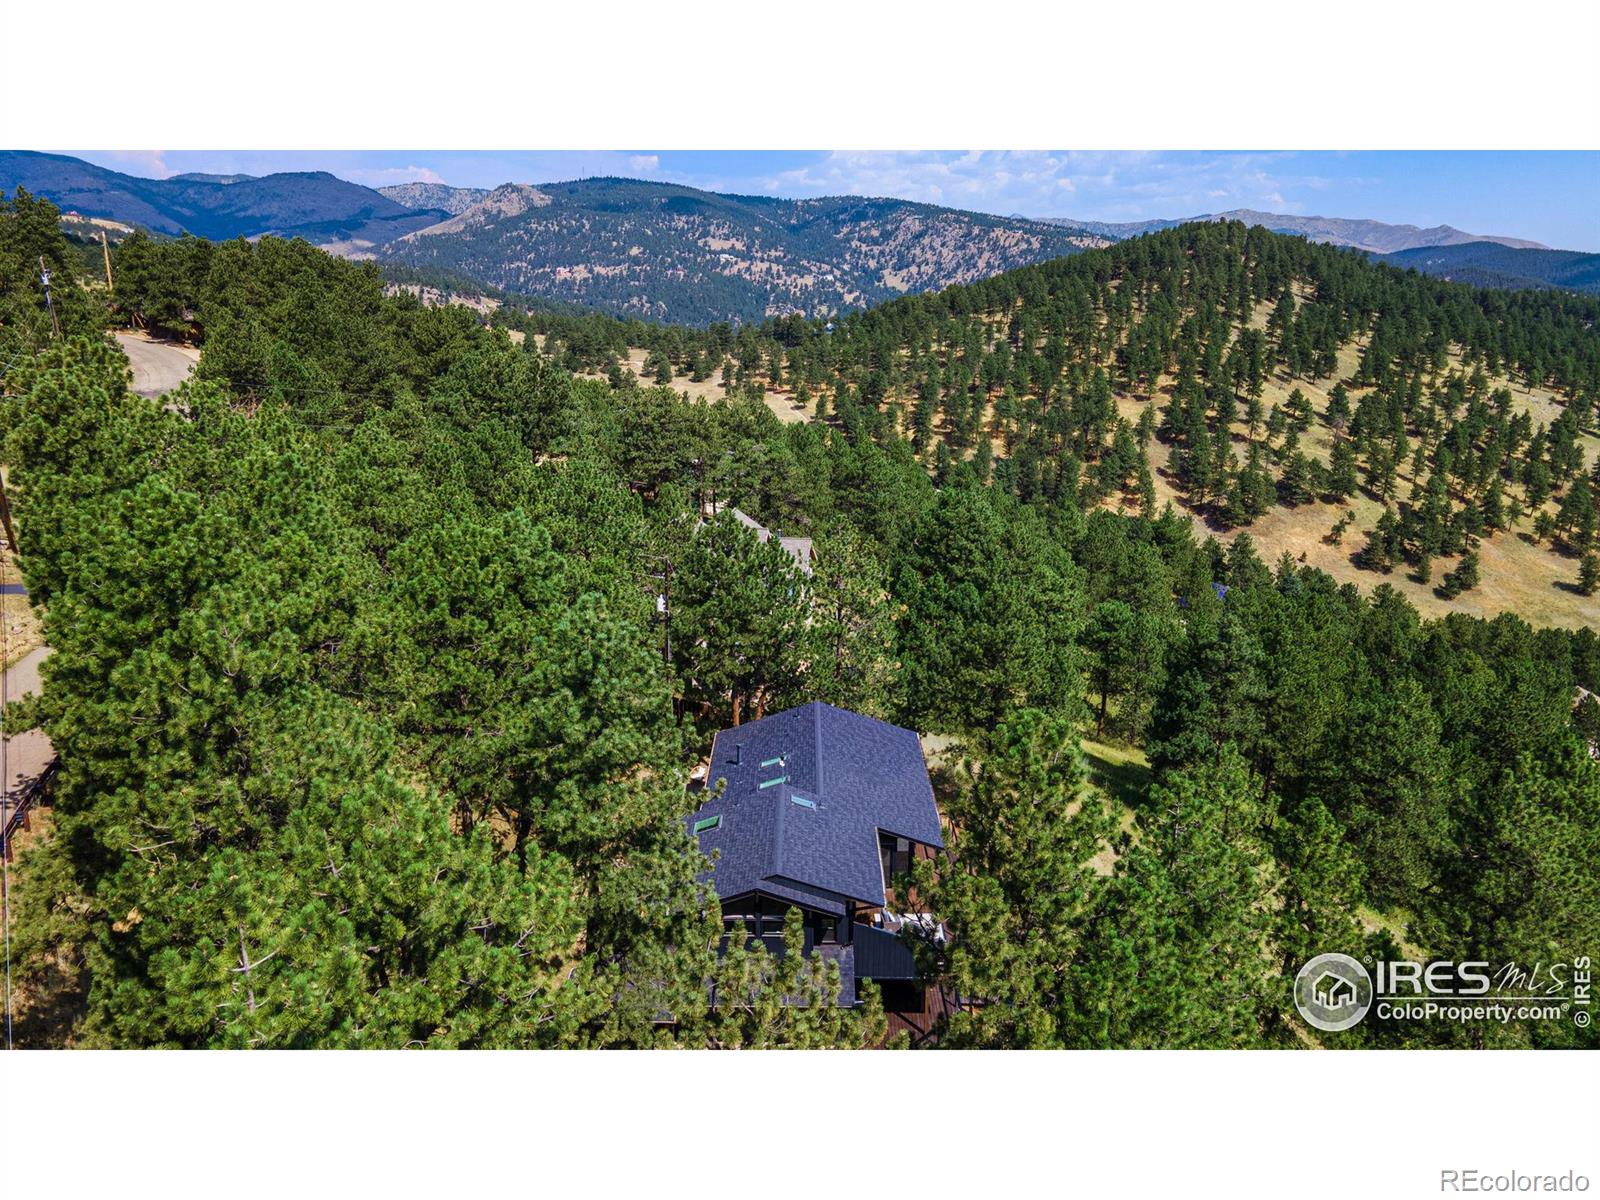 MLS Image #37 for 228  alpine way,boulder, Colorado